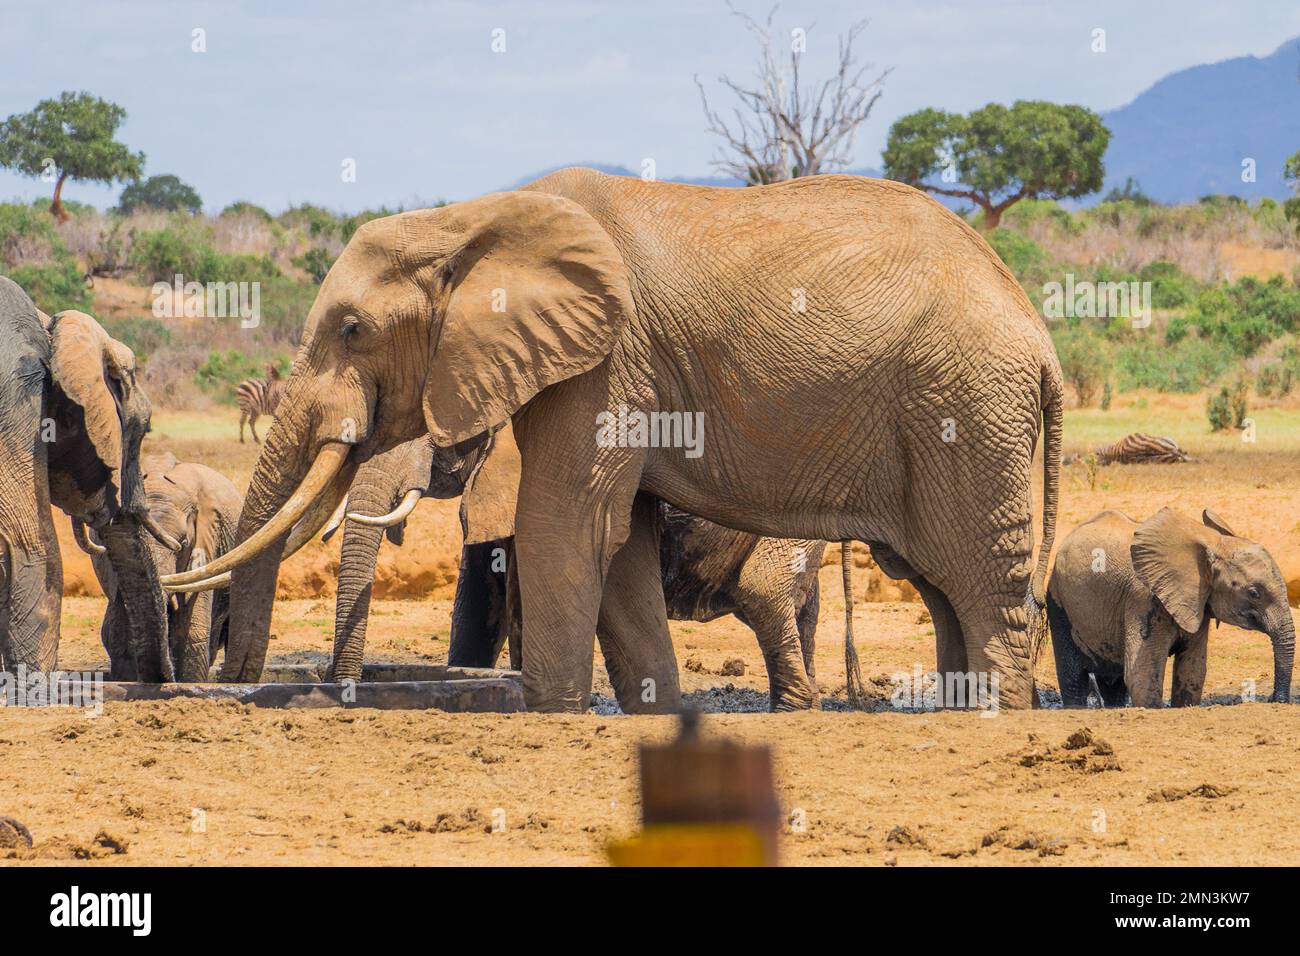 Wild elephants in Africa Stock Photo